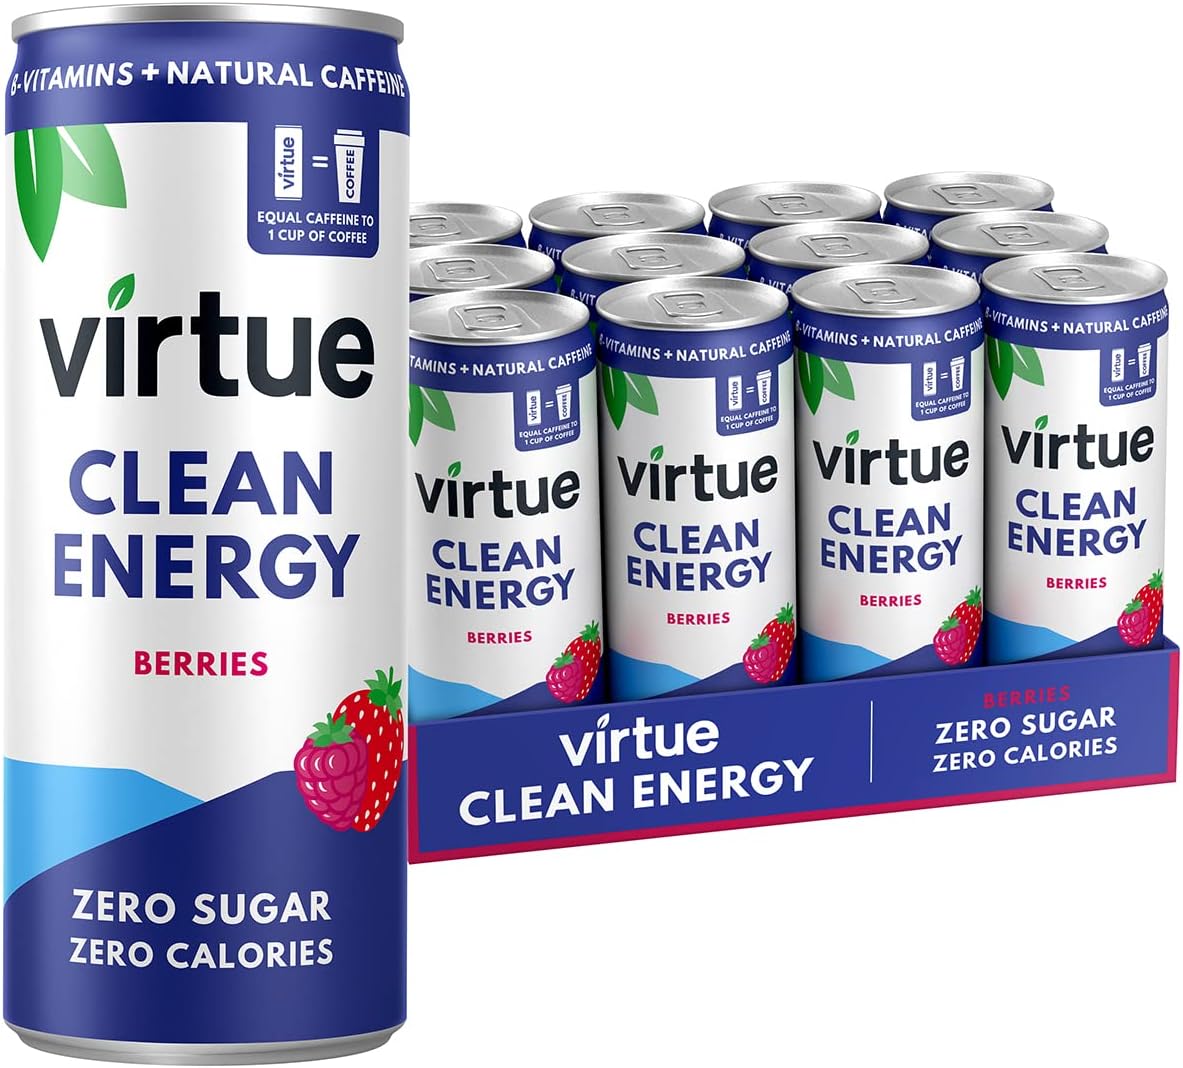 Virtue Clean Energy – Berries